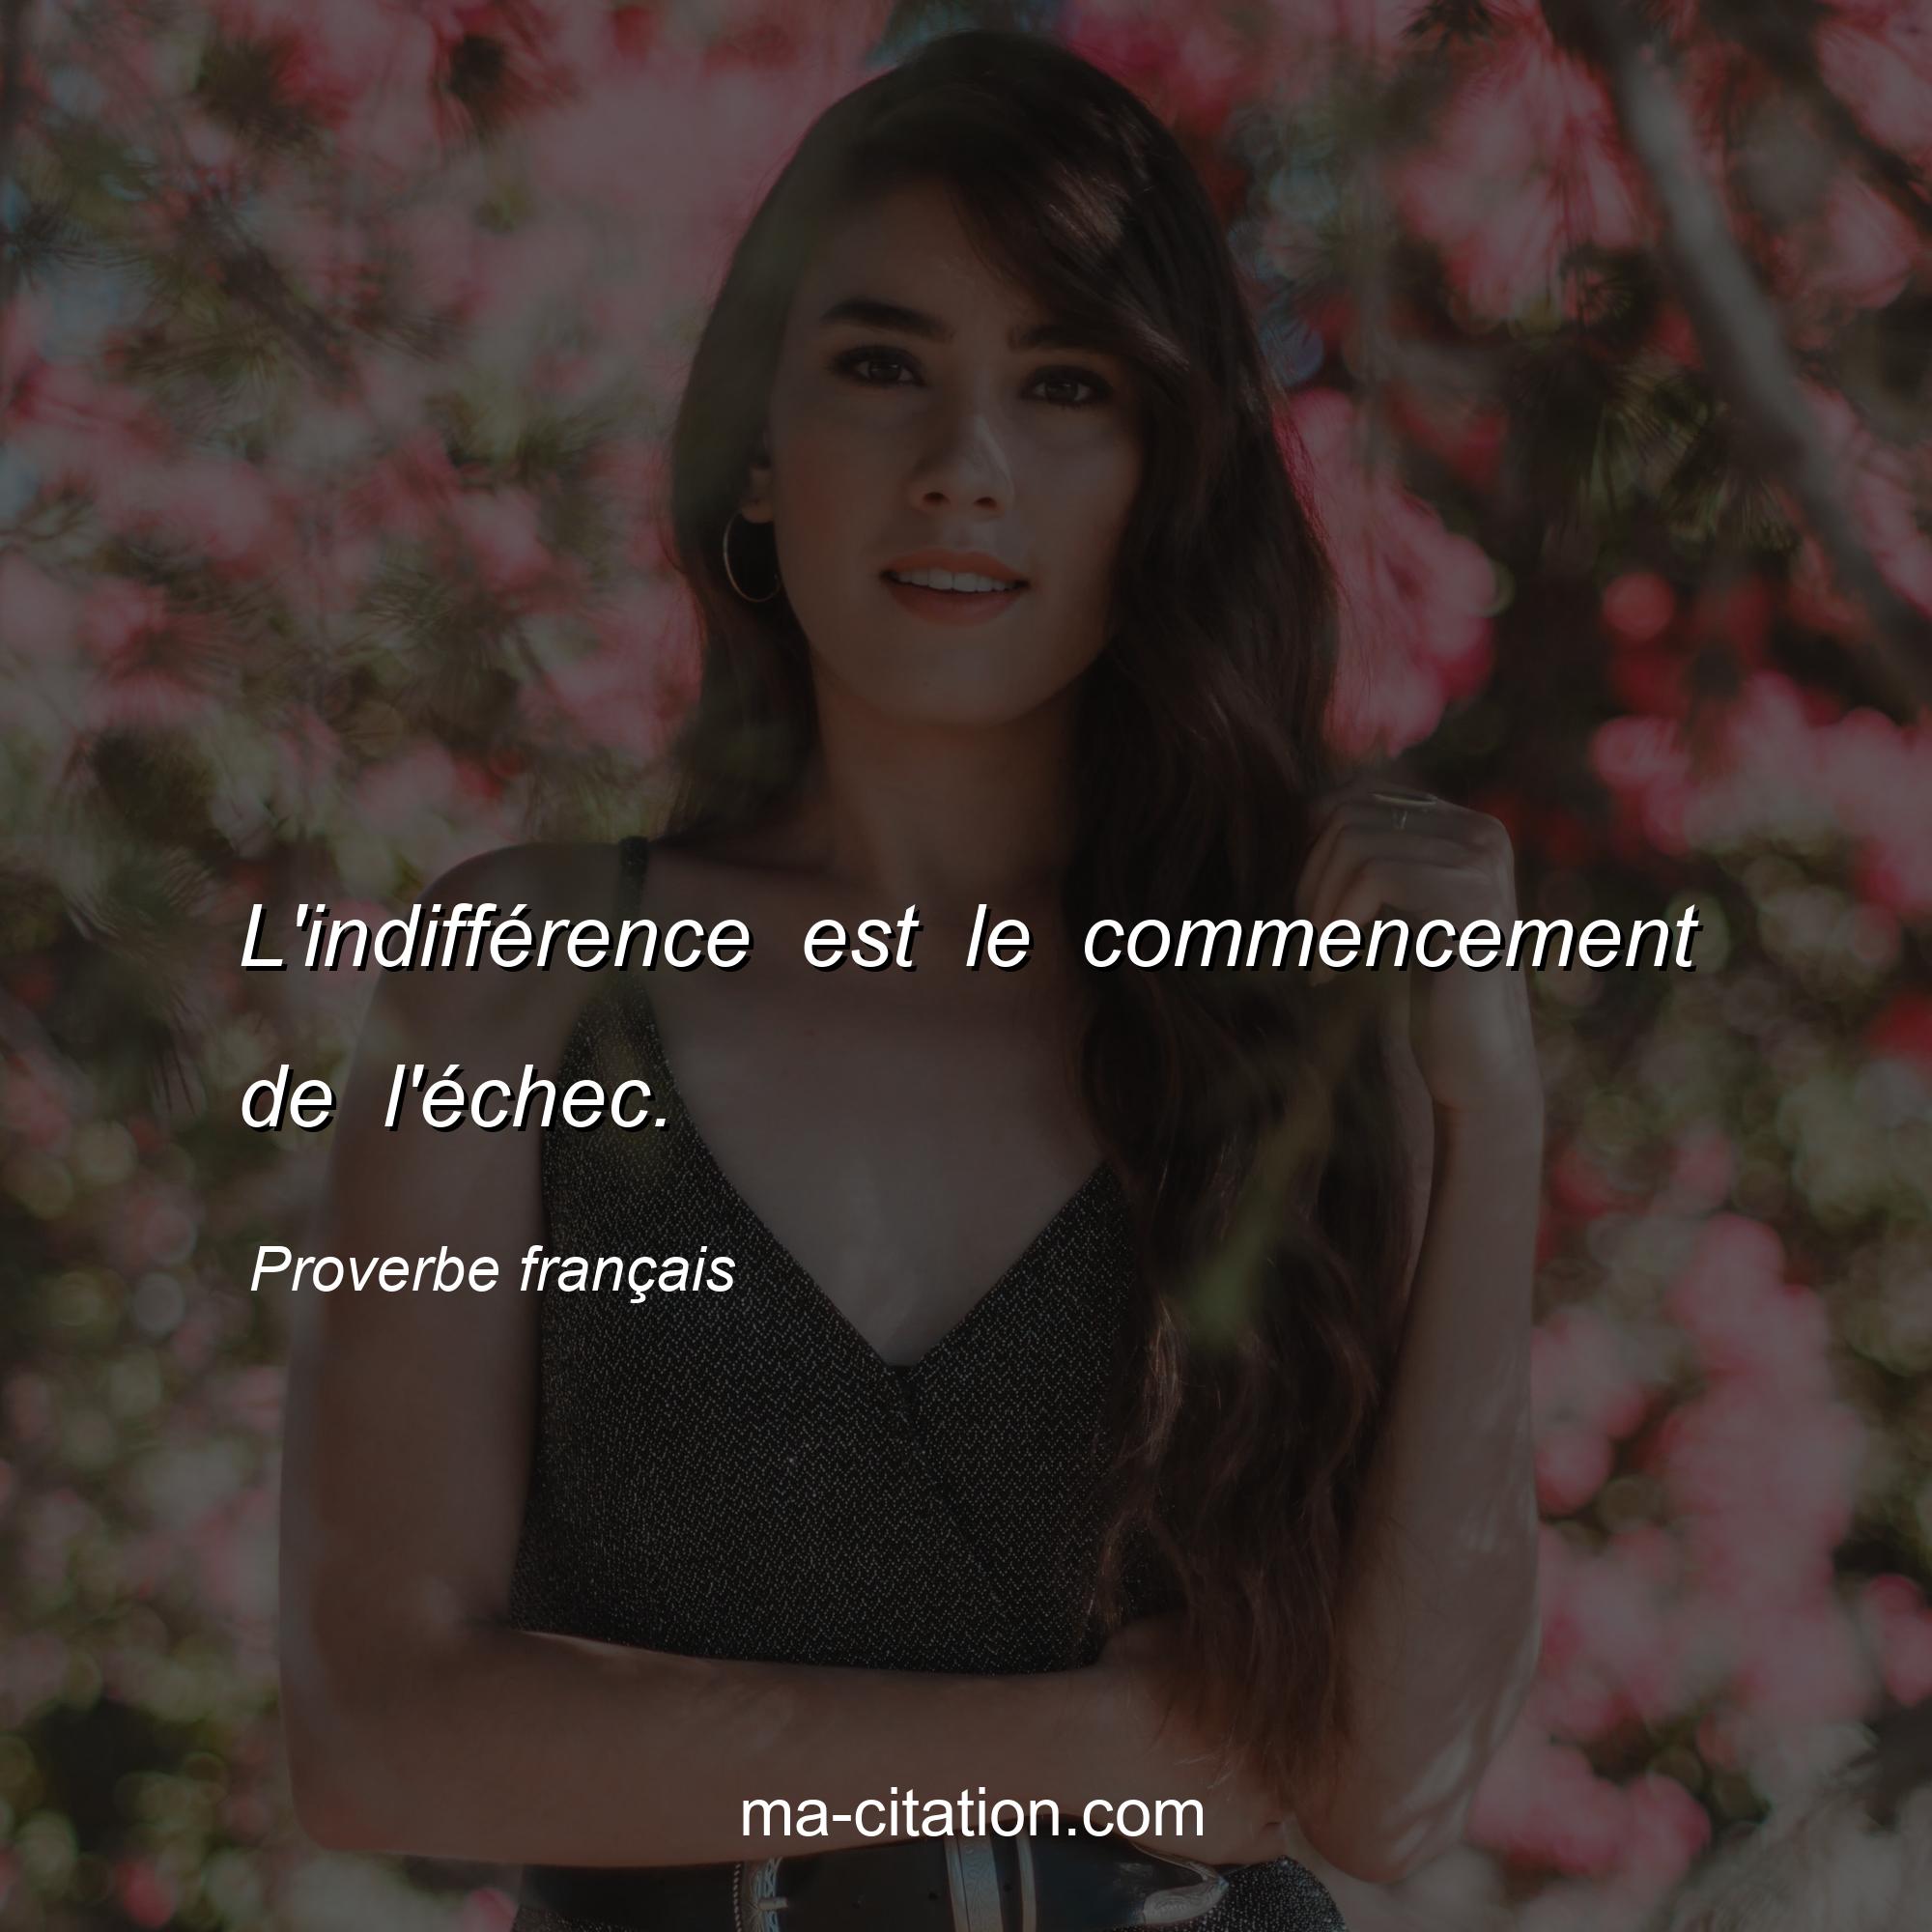 Proverbe français : L'indifférence est le commencement de l'échec.